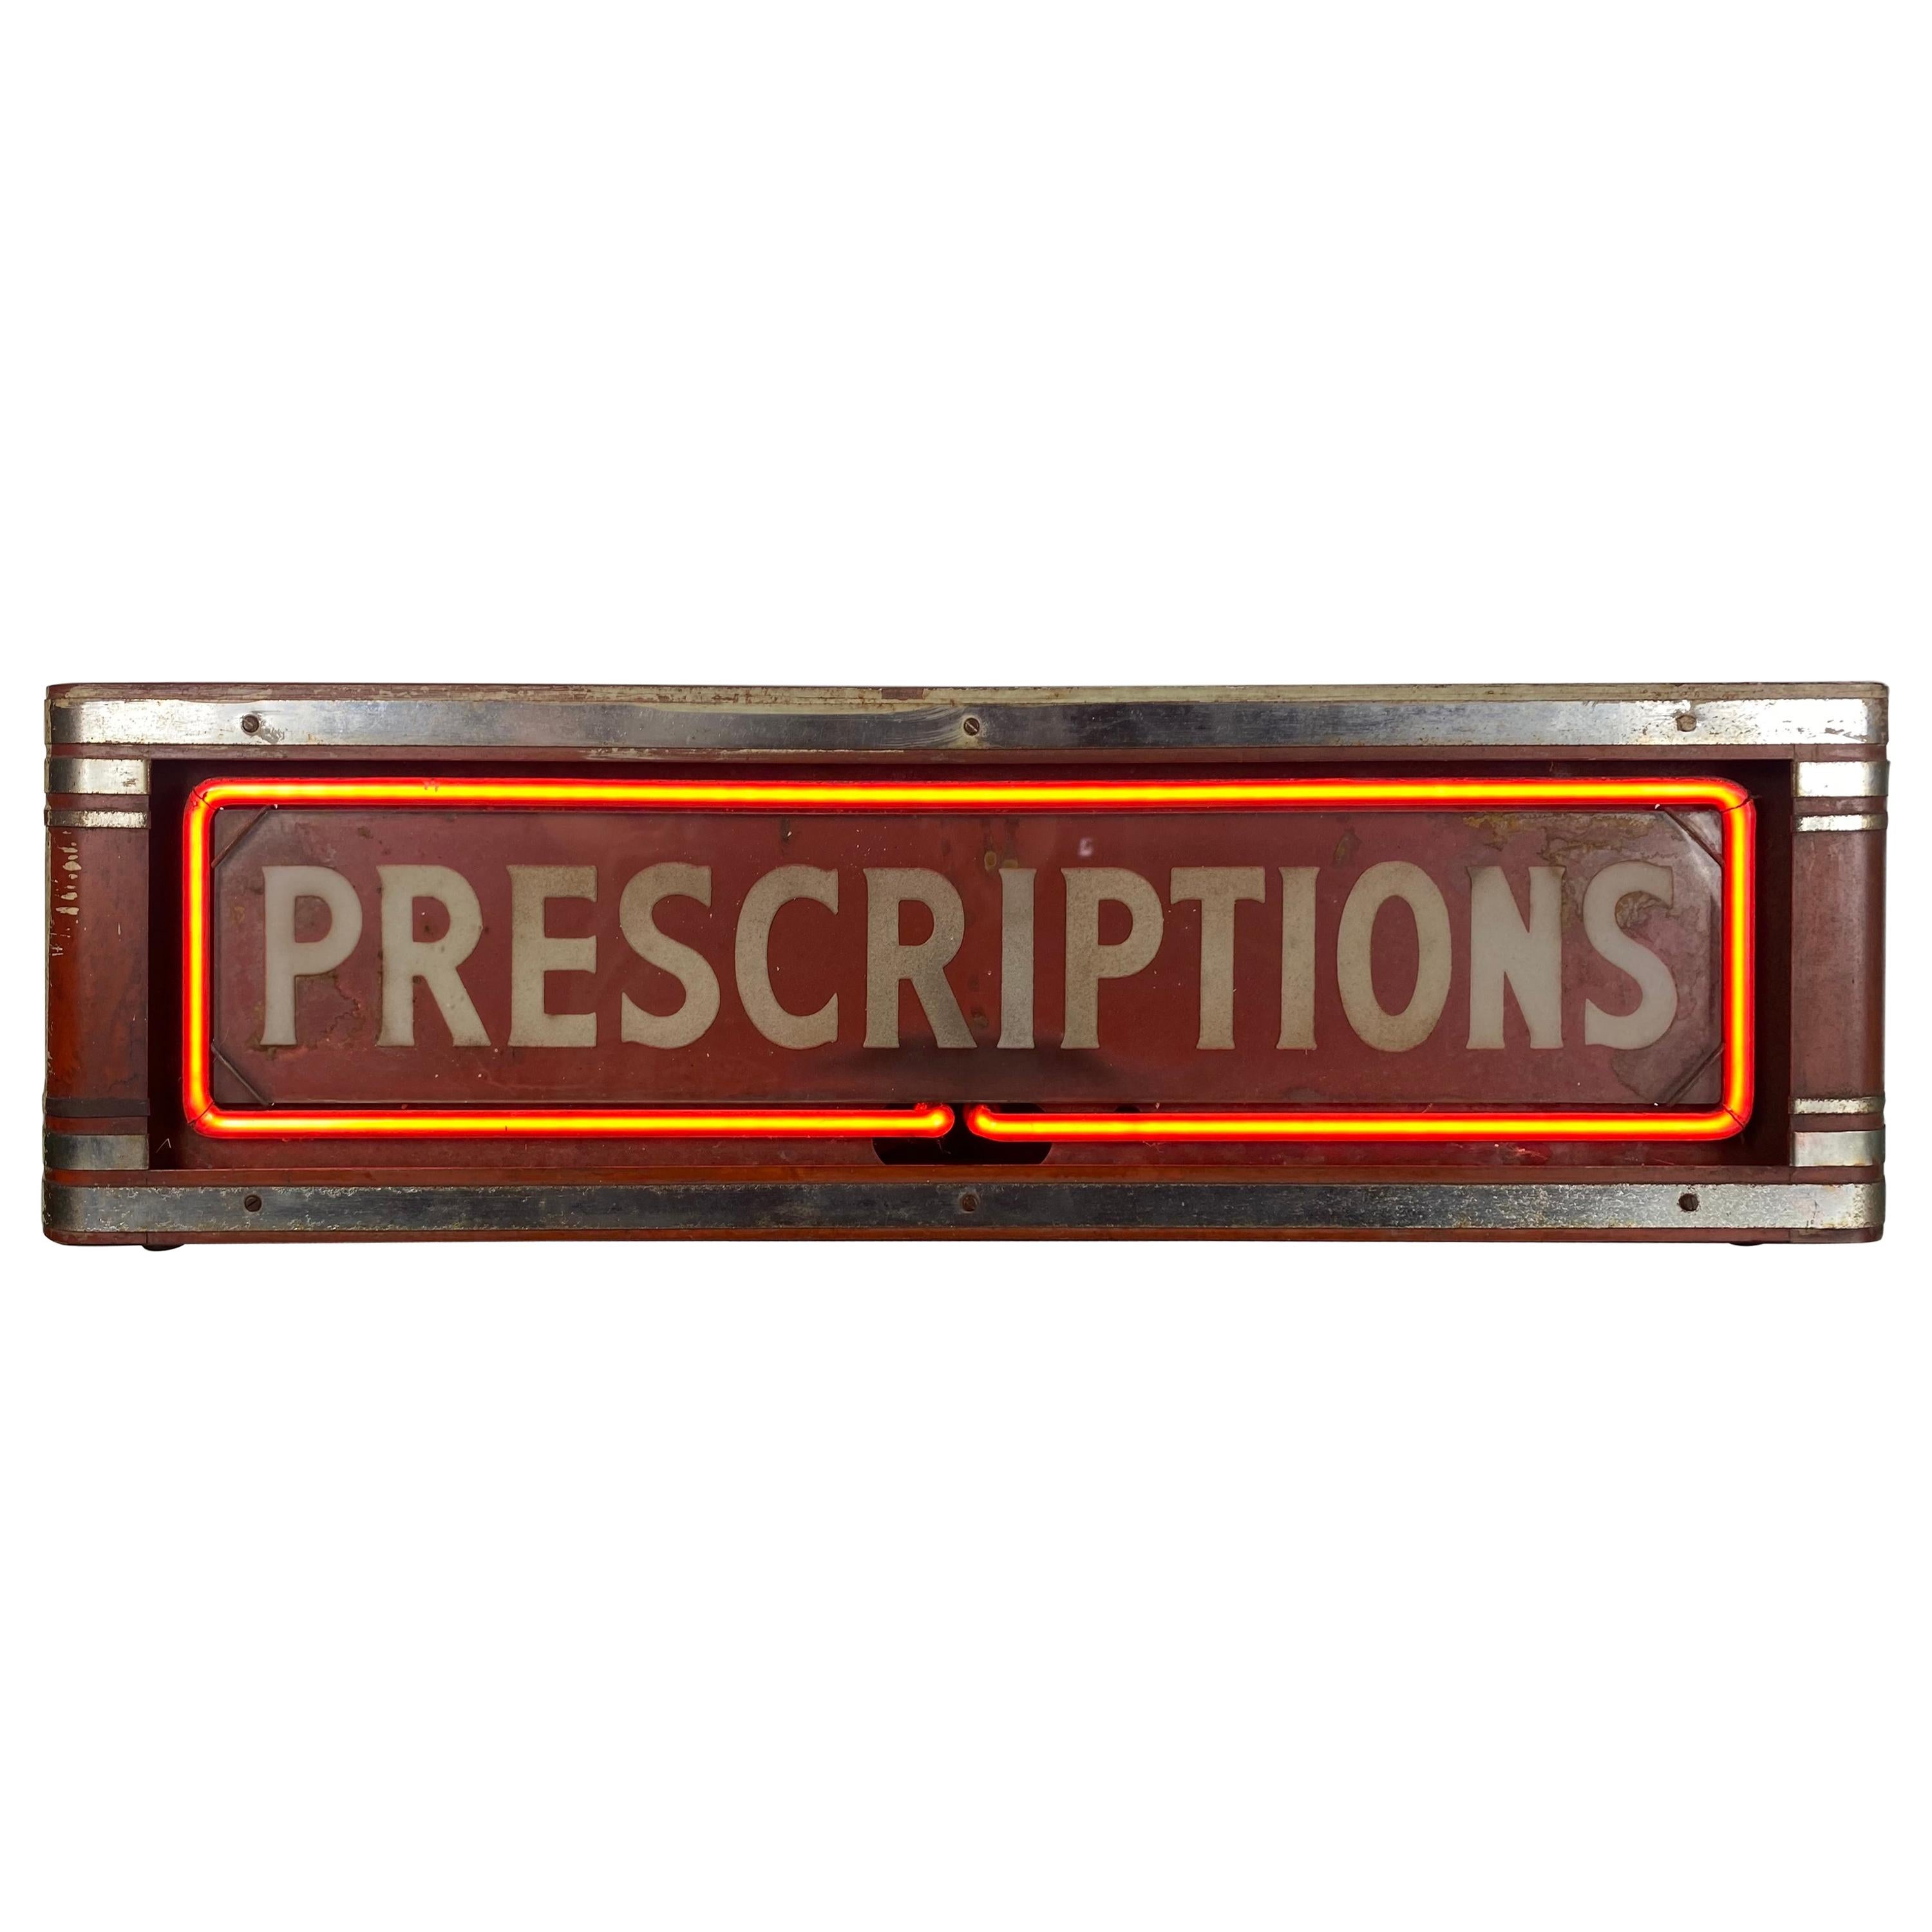 Art Deco Box Neon Sign, "PRECRIPTIONS'' Red Neon Drug Store Sign